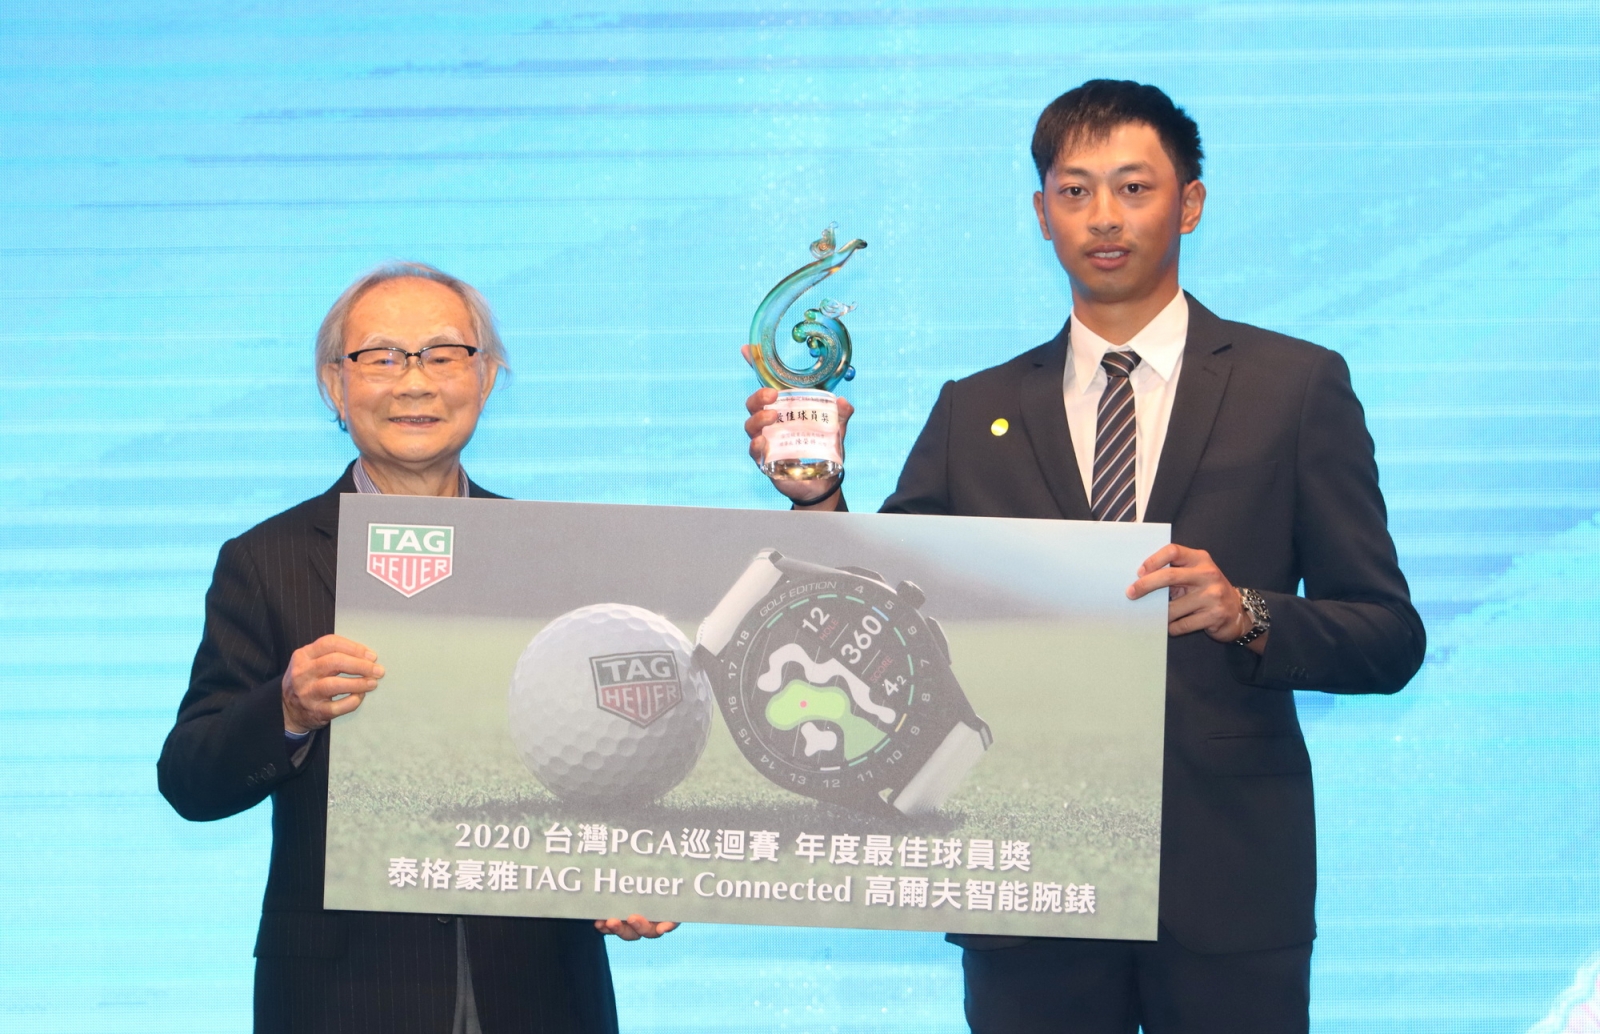 王偉軒獲得TPGA年度最佳球員獎項與泰格豪雅腕錶，左是頒獎人為三花棉業公司董事長施純鎰。(鍾豐榮攝影)